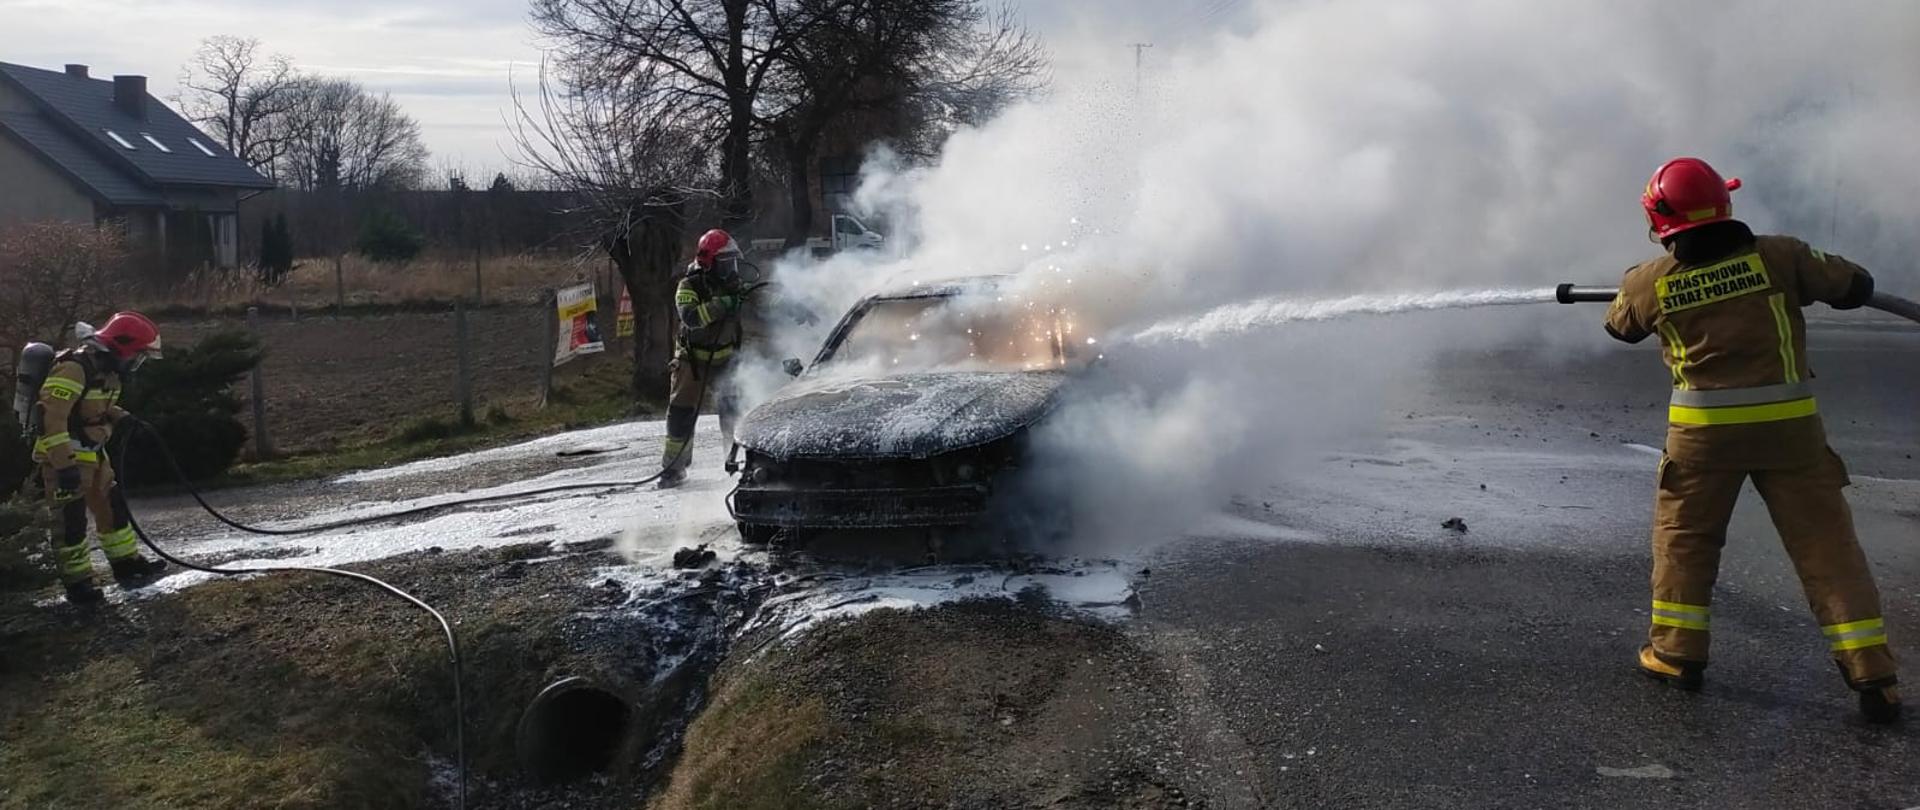 Samochód osobowy jest gaszony przez trzech strażaków w pełnym stroju strażackim. Samochód stoi na poboczu drogi asfaltowej.